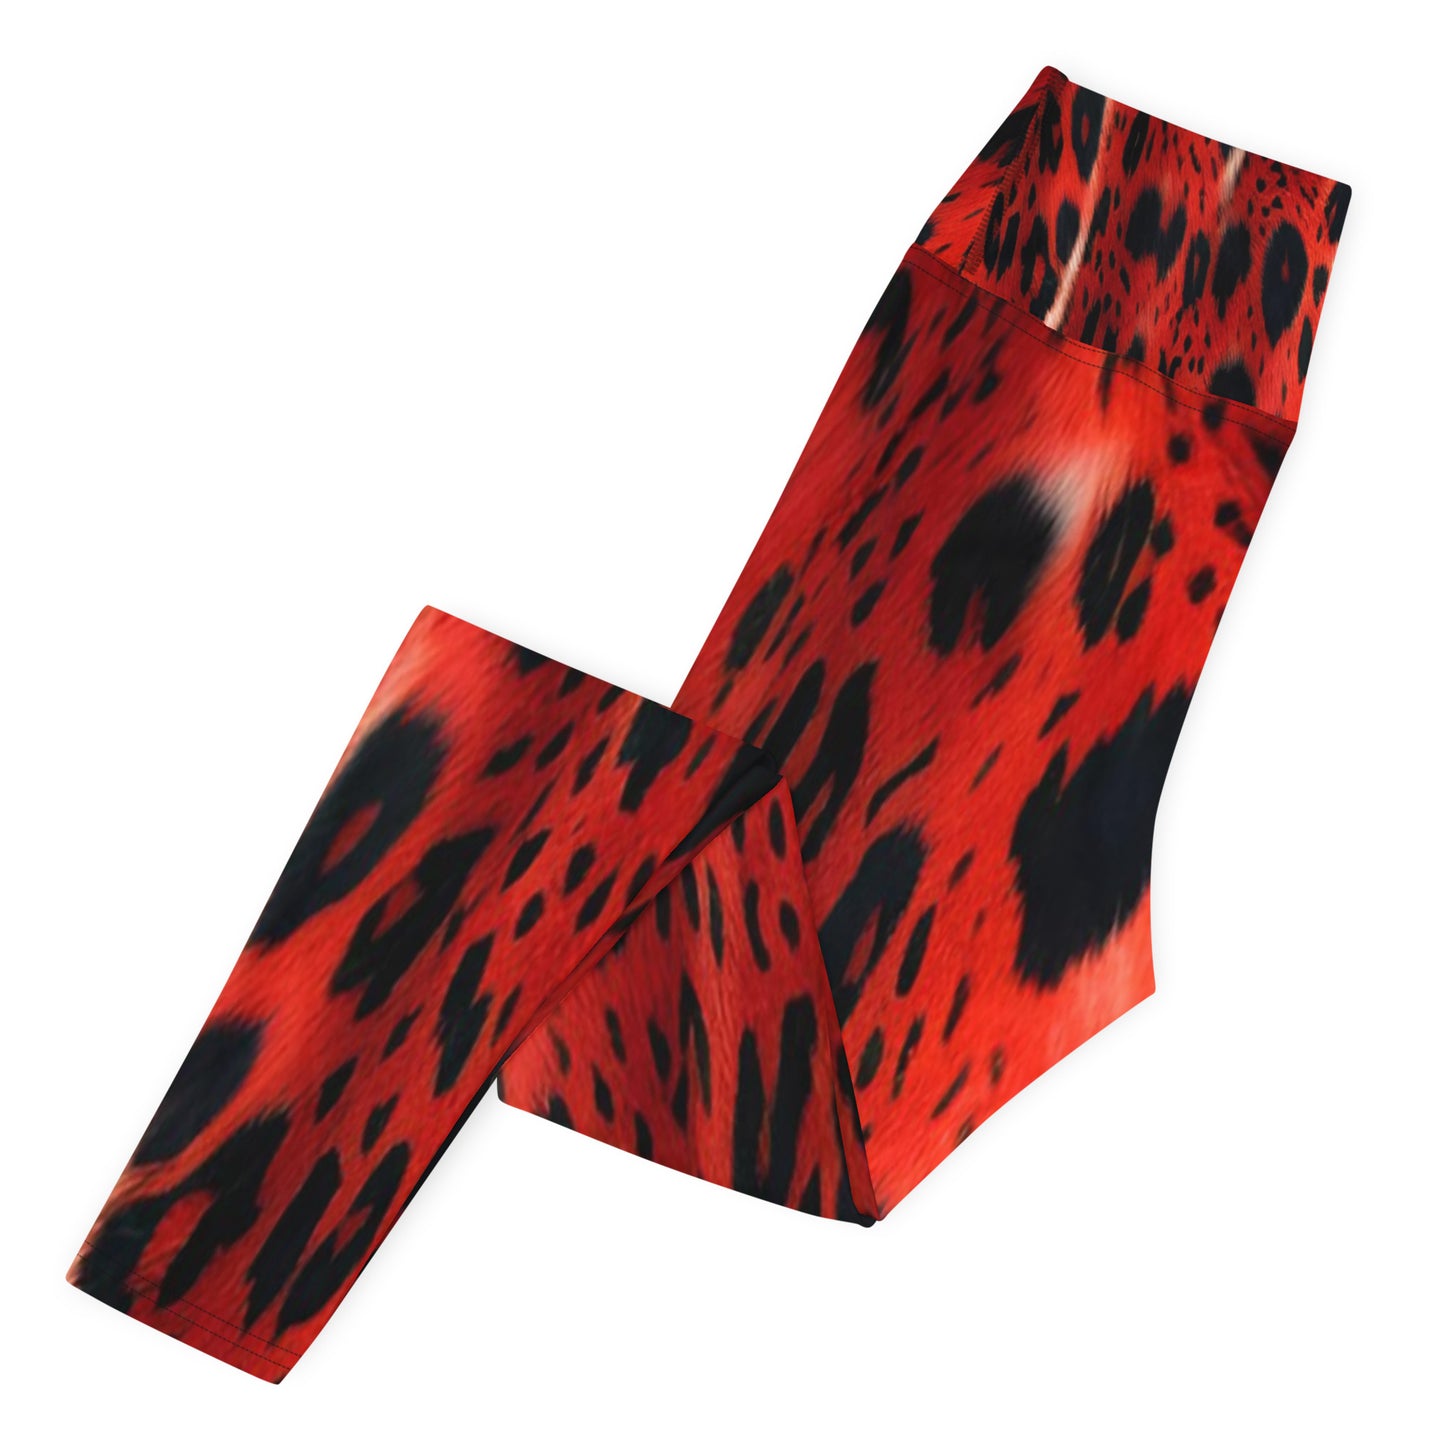 Red Leopard Fur Custom Print Yoga Leggings